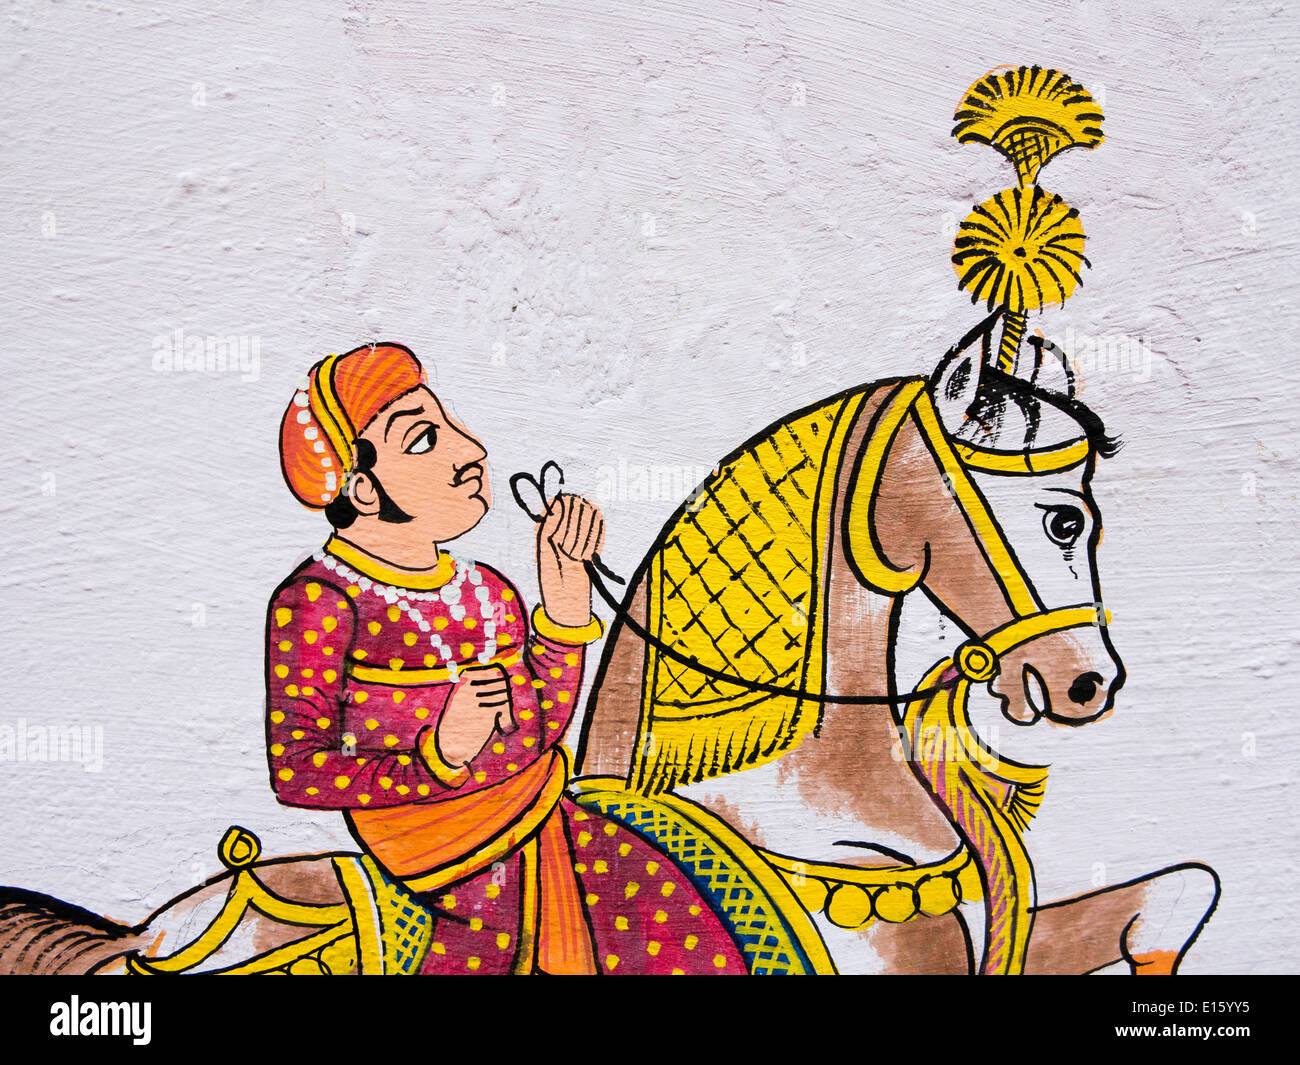 Indien, Rajasthan, Udaipur, traditionelle Wandmalerei der Rajput Mann auf Pferd Stockfoto